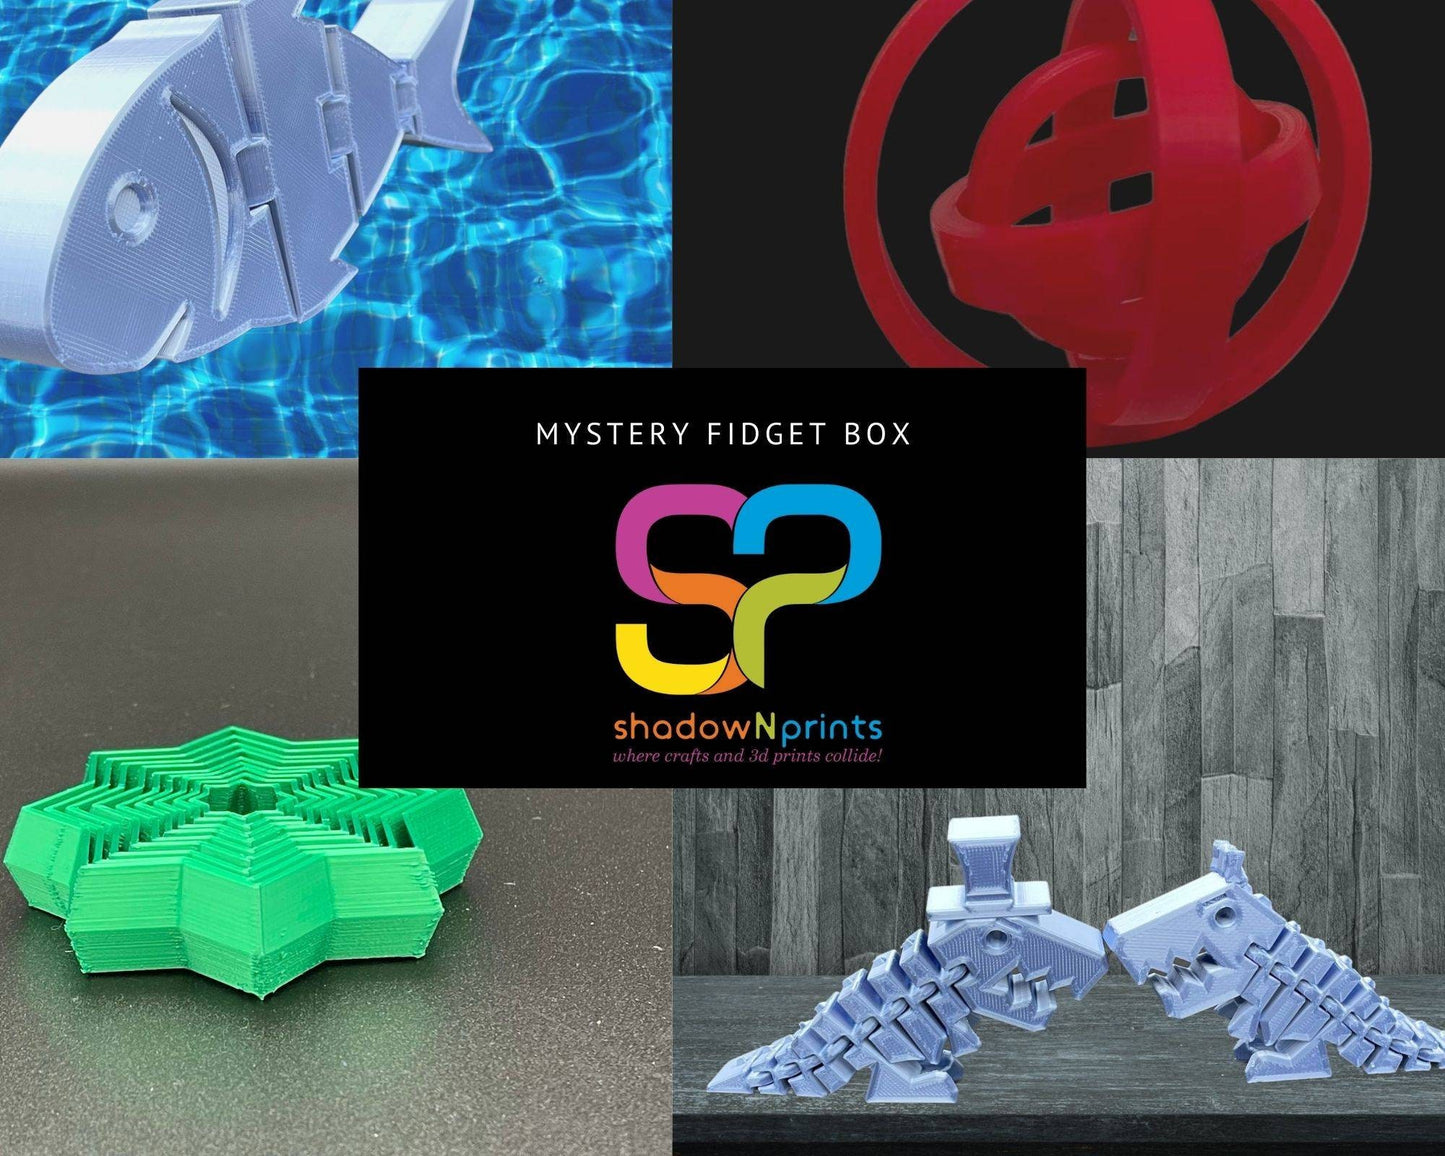 Fidget Mystery Box, 3d print, Fidget, shadowNprints, 3d print Fidget Box, Surprise Fidget Box, Mystery Box, 3d Fidget Mystery Box, gift